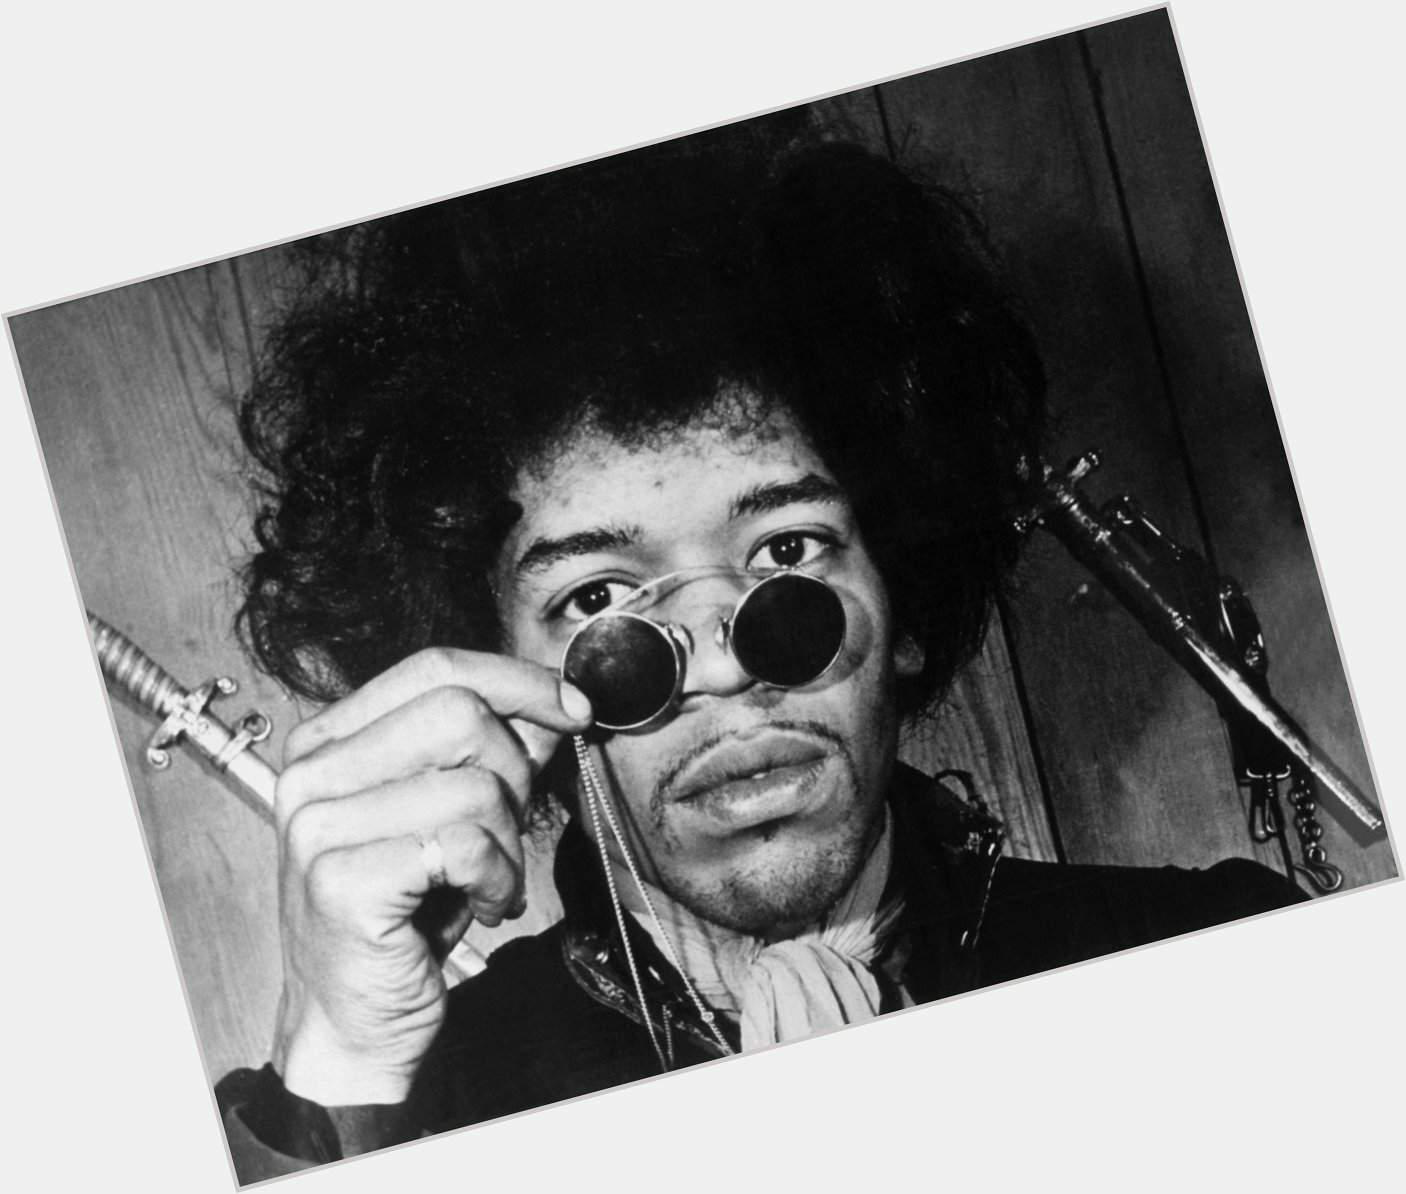 Happy birthday to the legendary Jimi Hendrix! Born 27 November 1942. 